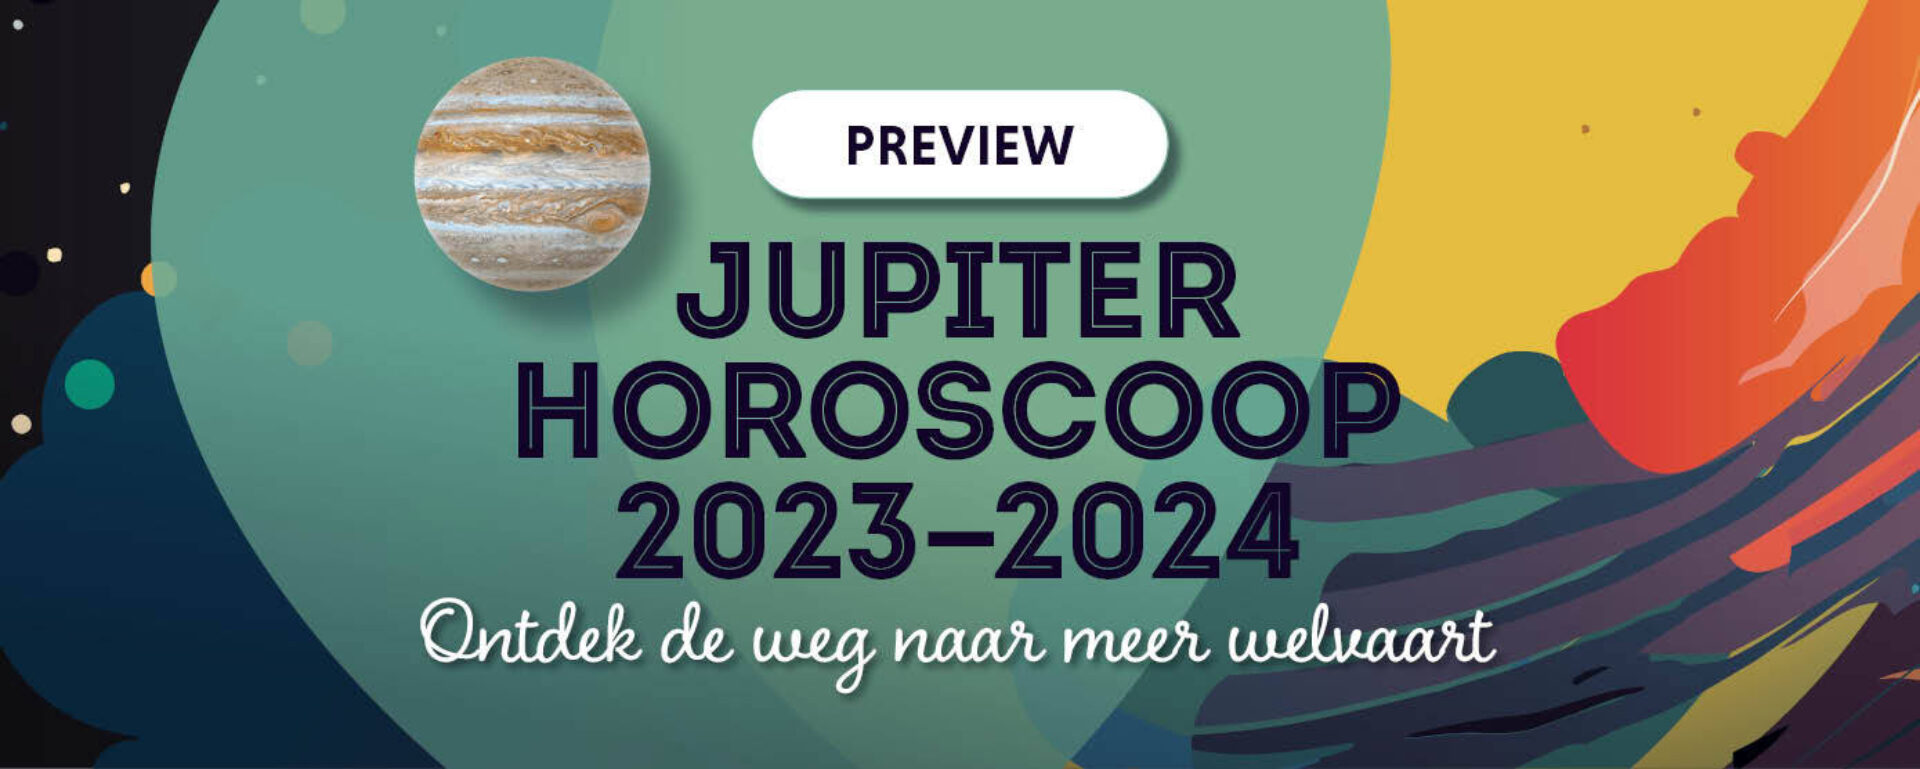 PREVIEW// Jupiter Horoscoop 2023-2024: ontdek de weg naar welvaart & succes